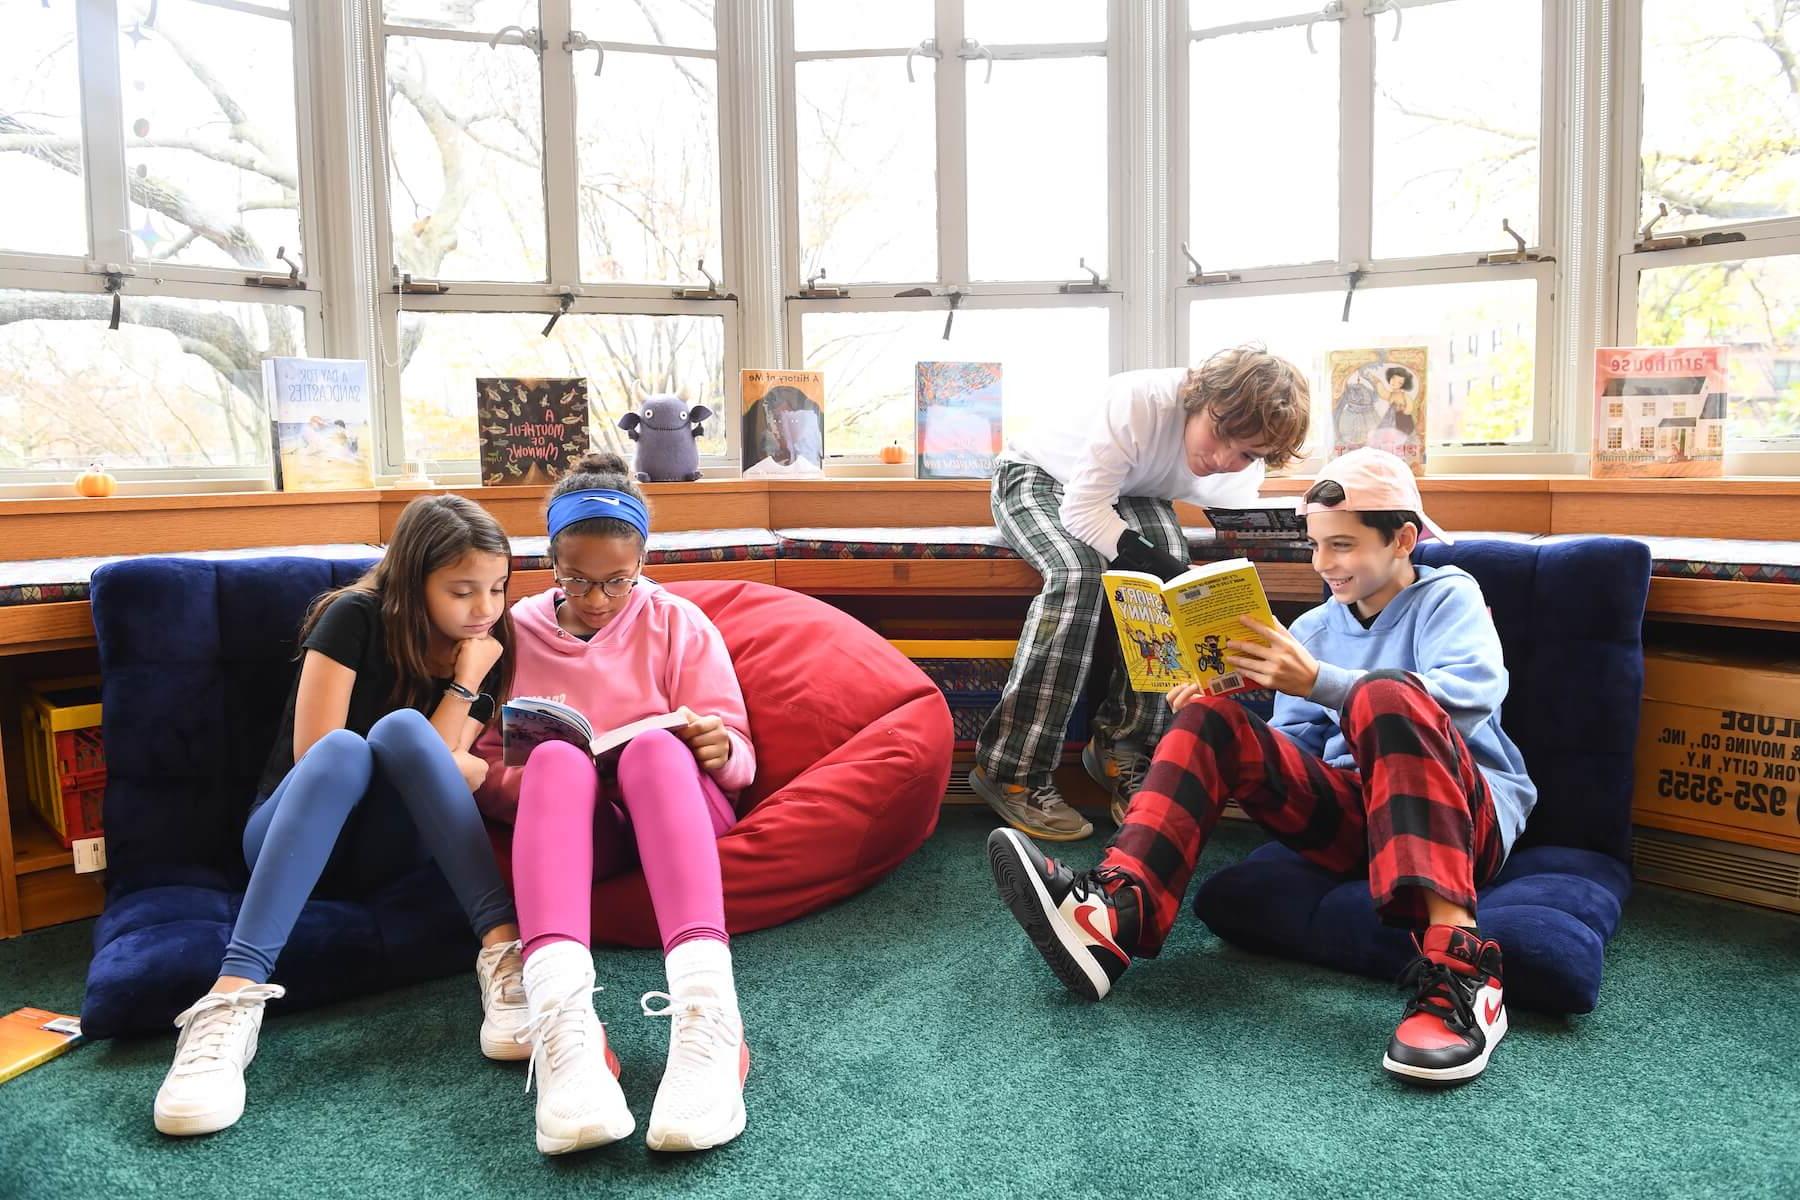 菲尔德斯顿学校五年级学生在图书馆分享书籍